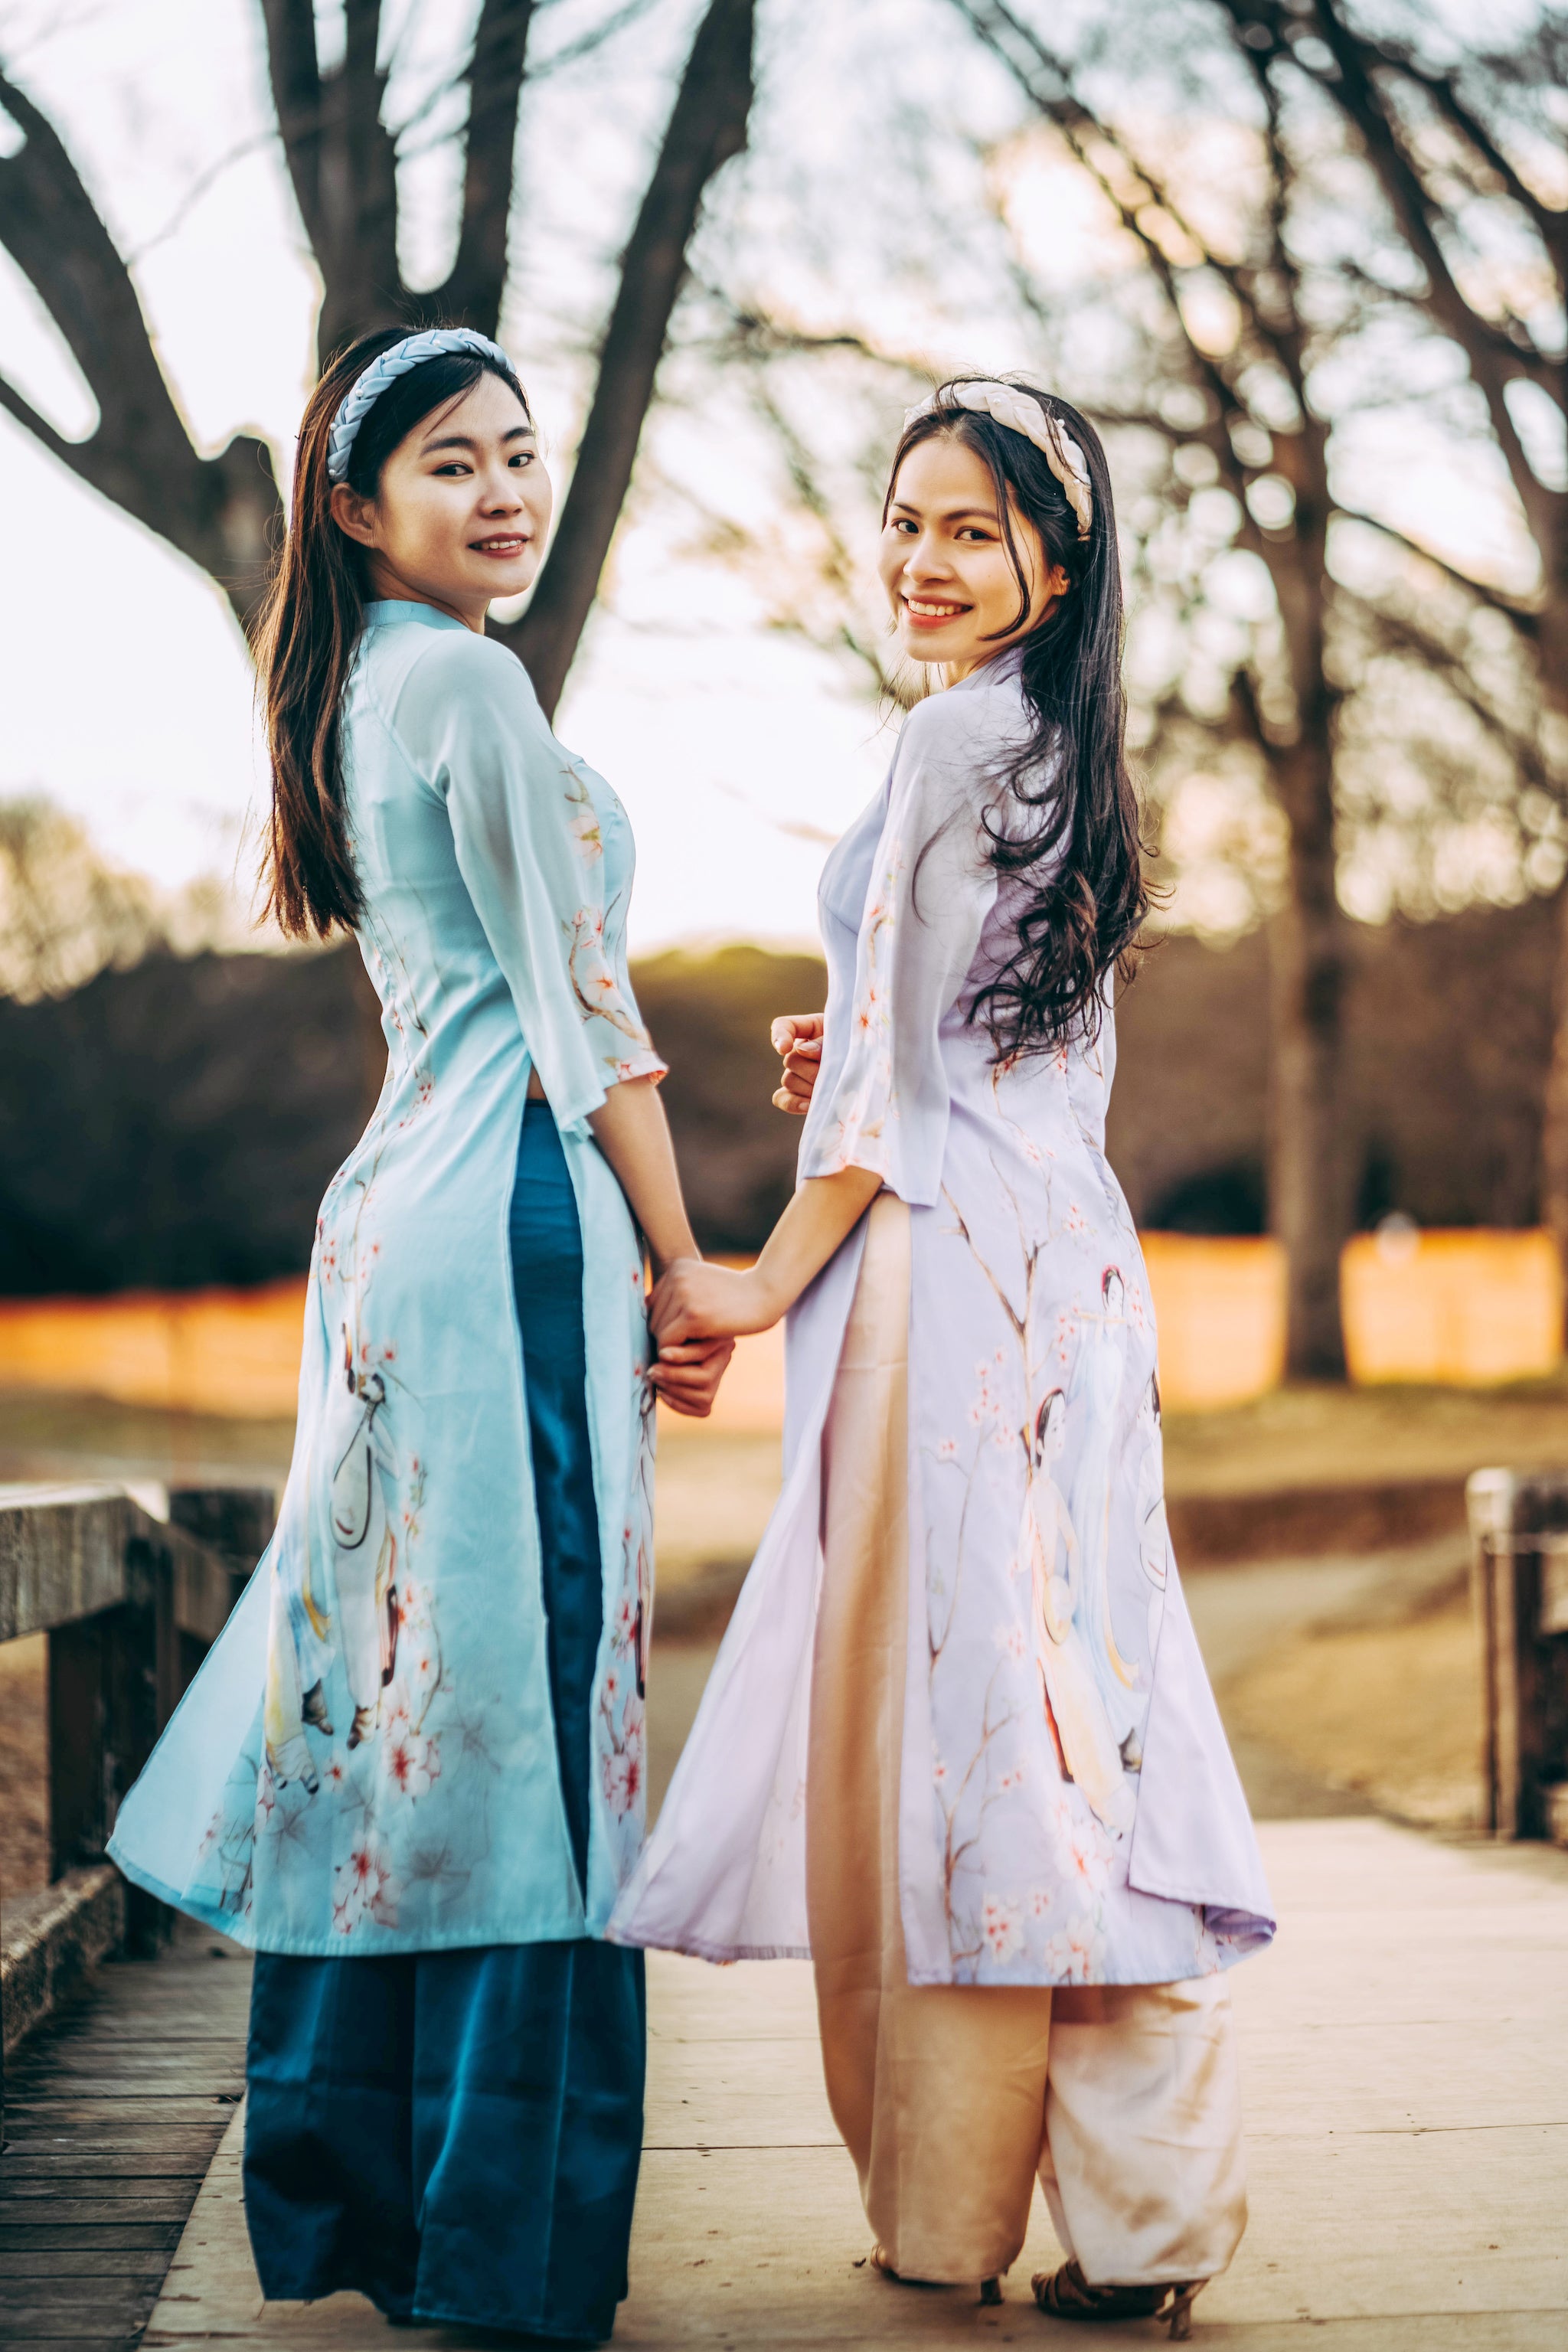 QUẢNG CÁO NỮ - ÁO ĐẠI THÀNH SƯƠNG Áo dài trang phục dân tộc Việt Nam (Không kèm quần) 